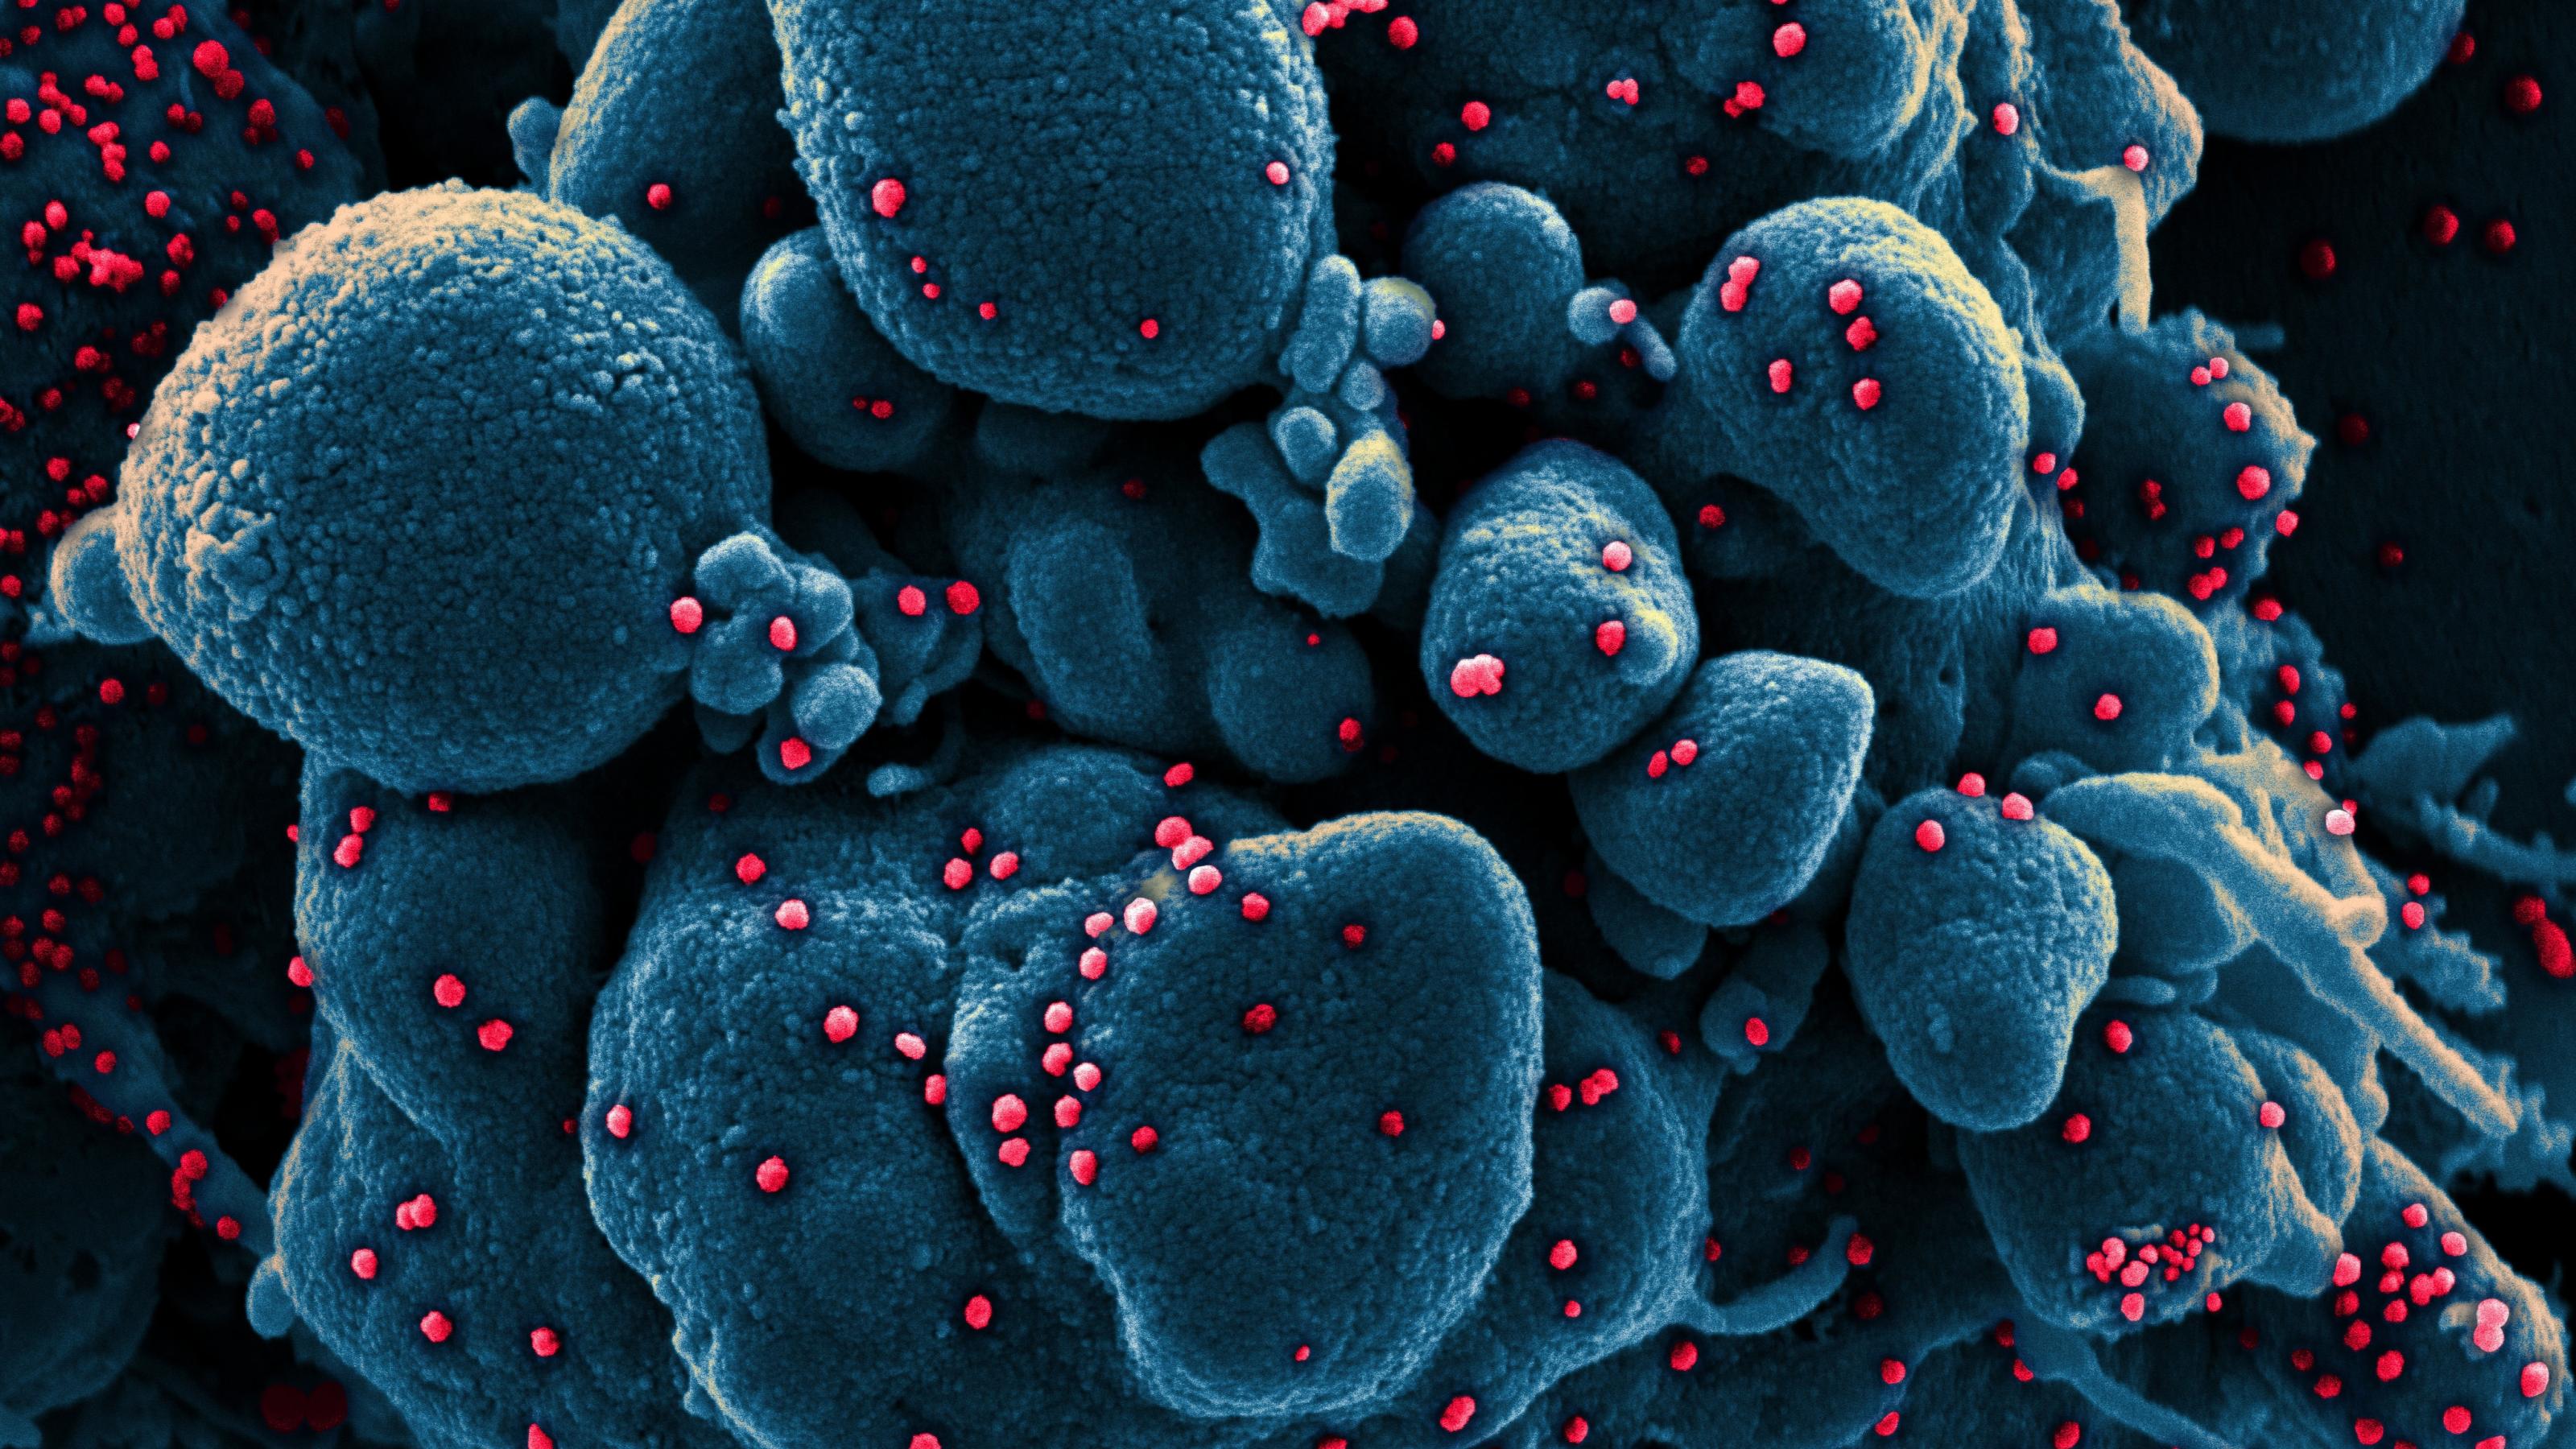 Ein Gewebe mit mehreren kugeligen dunkelblau eingefärbten Körperzellen. Darauf sitzen an mehreren Stellen kleine pinkfarbene Kügelchen. Dabei handelt es sich um das neue Coronavirus.